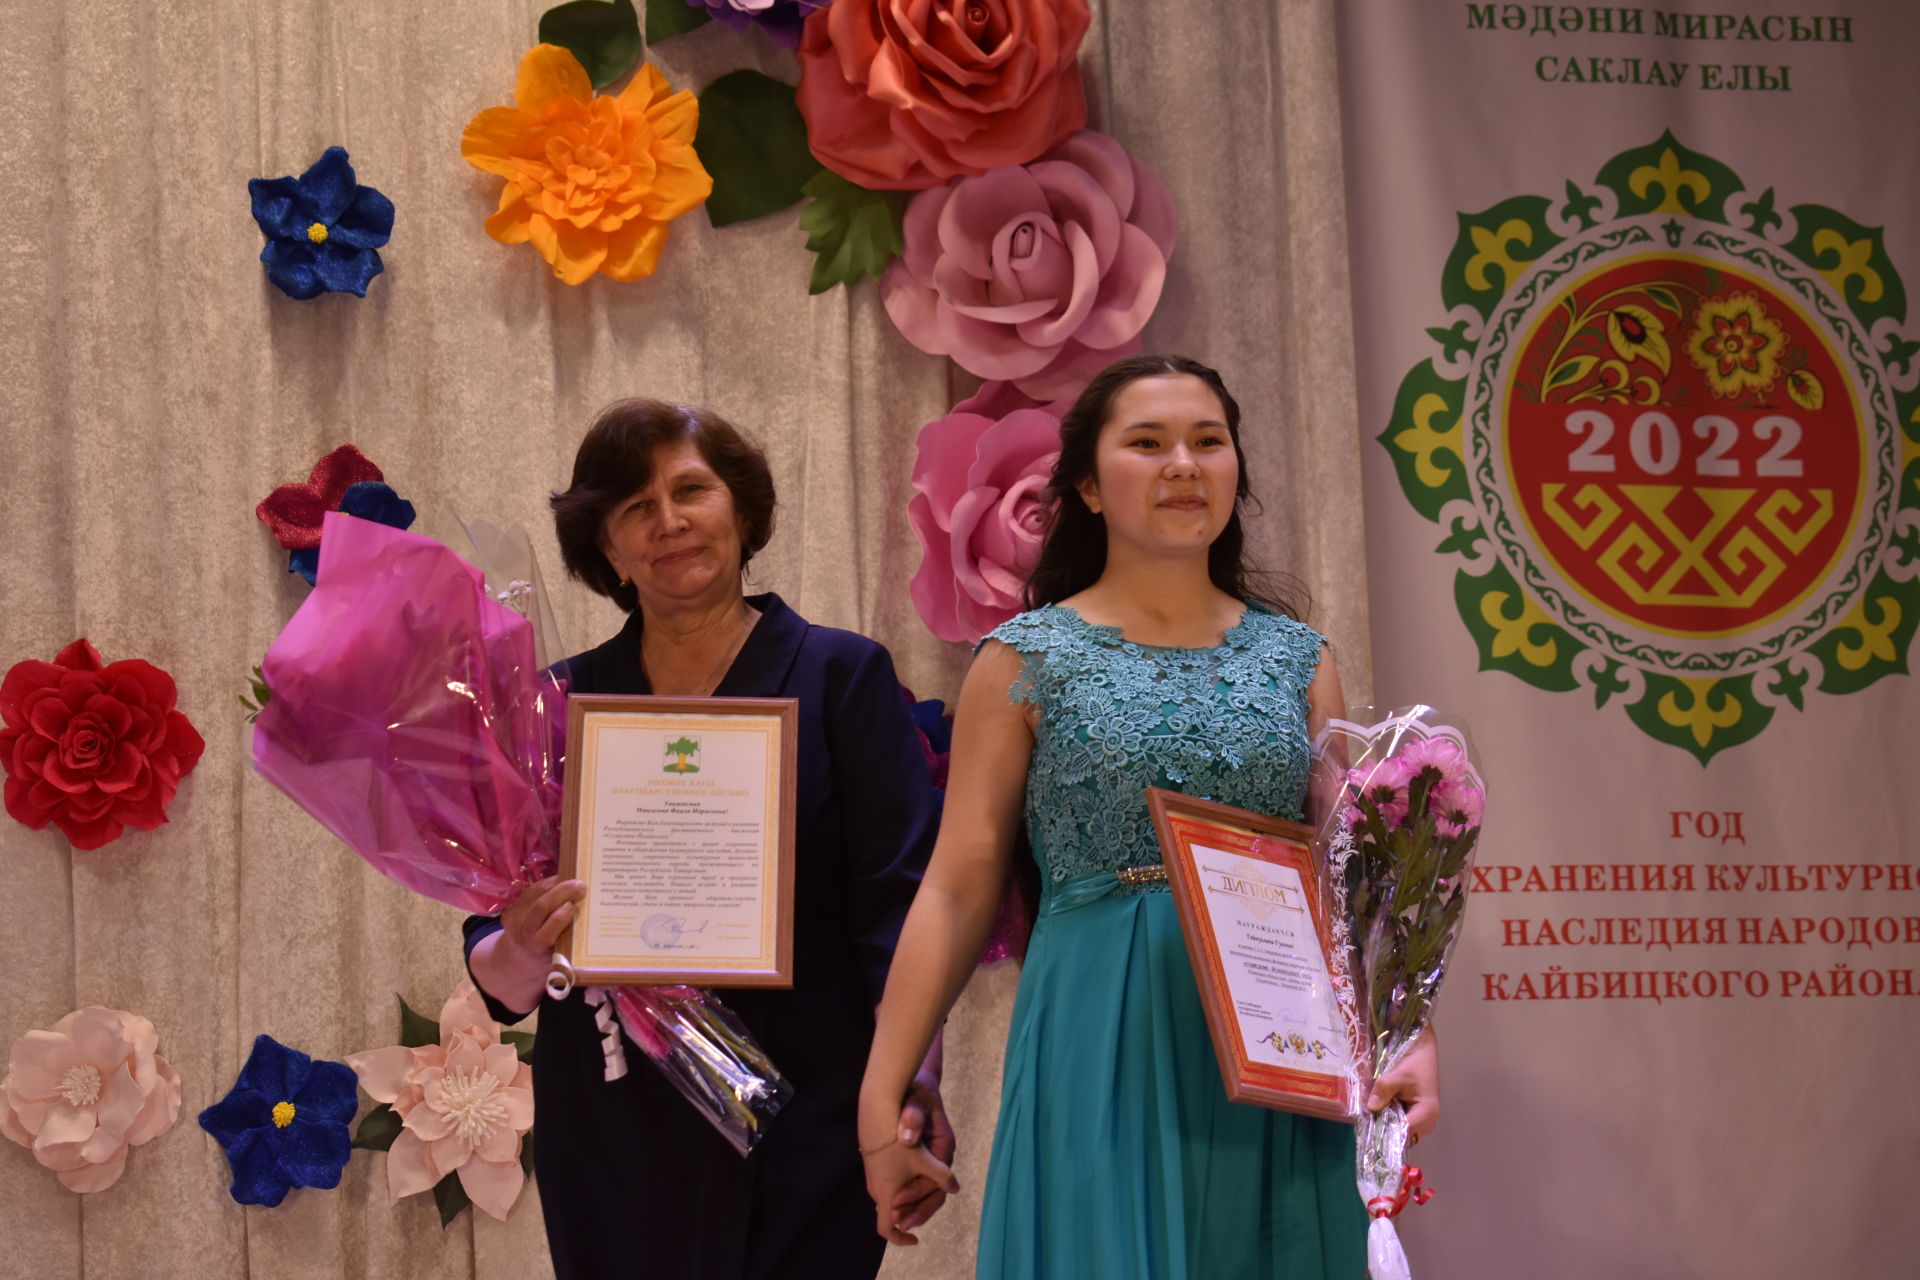 В Кайбицах наградили участников фестиваля «Созвездие»